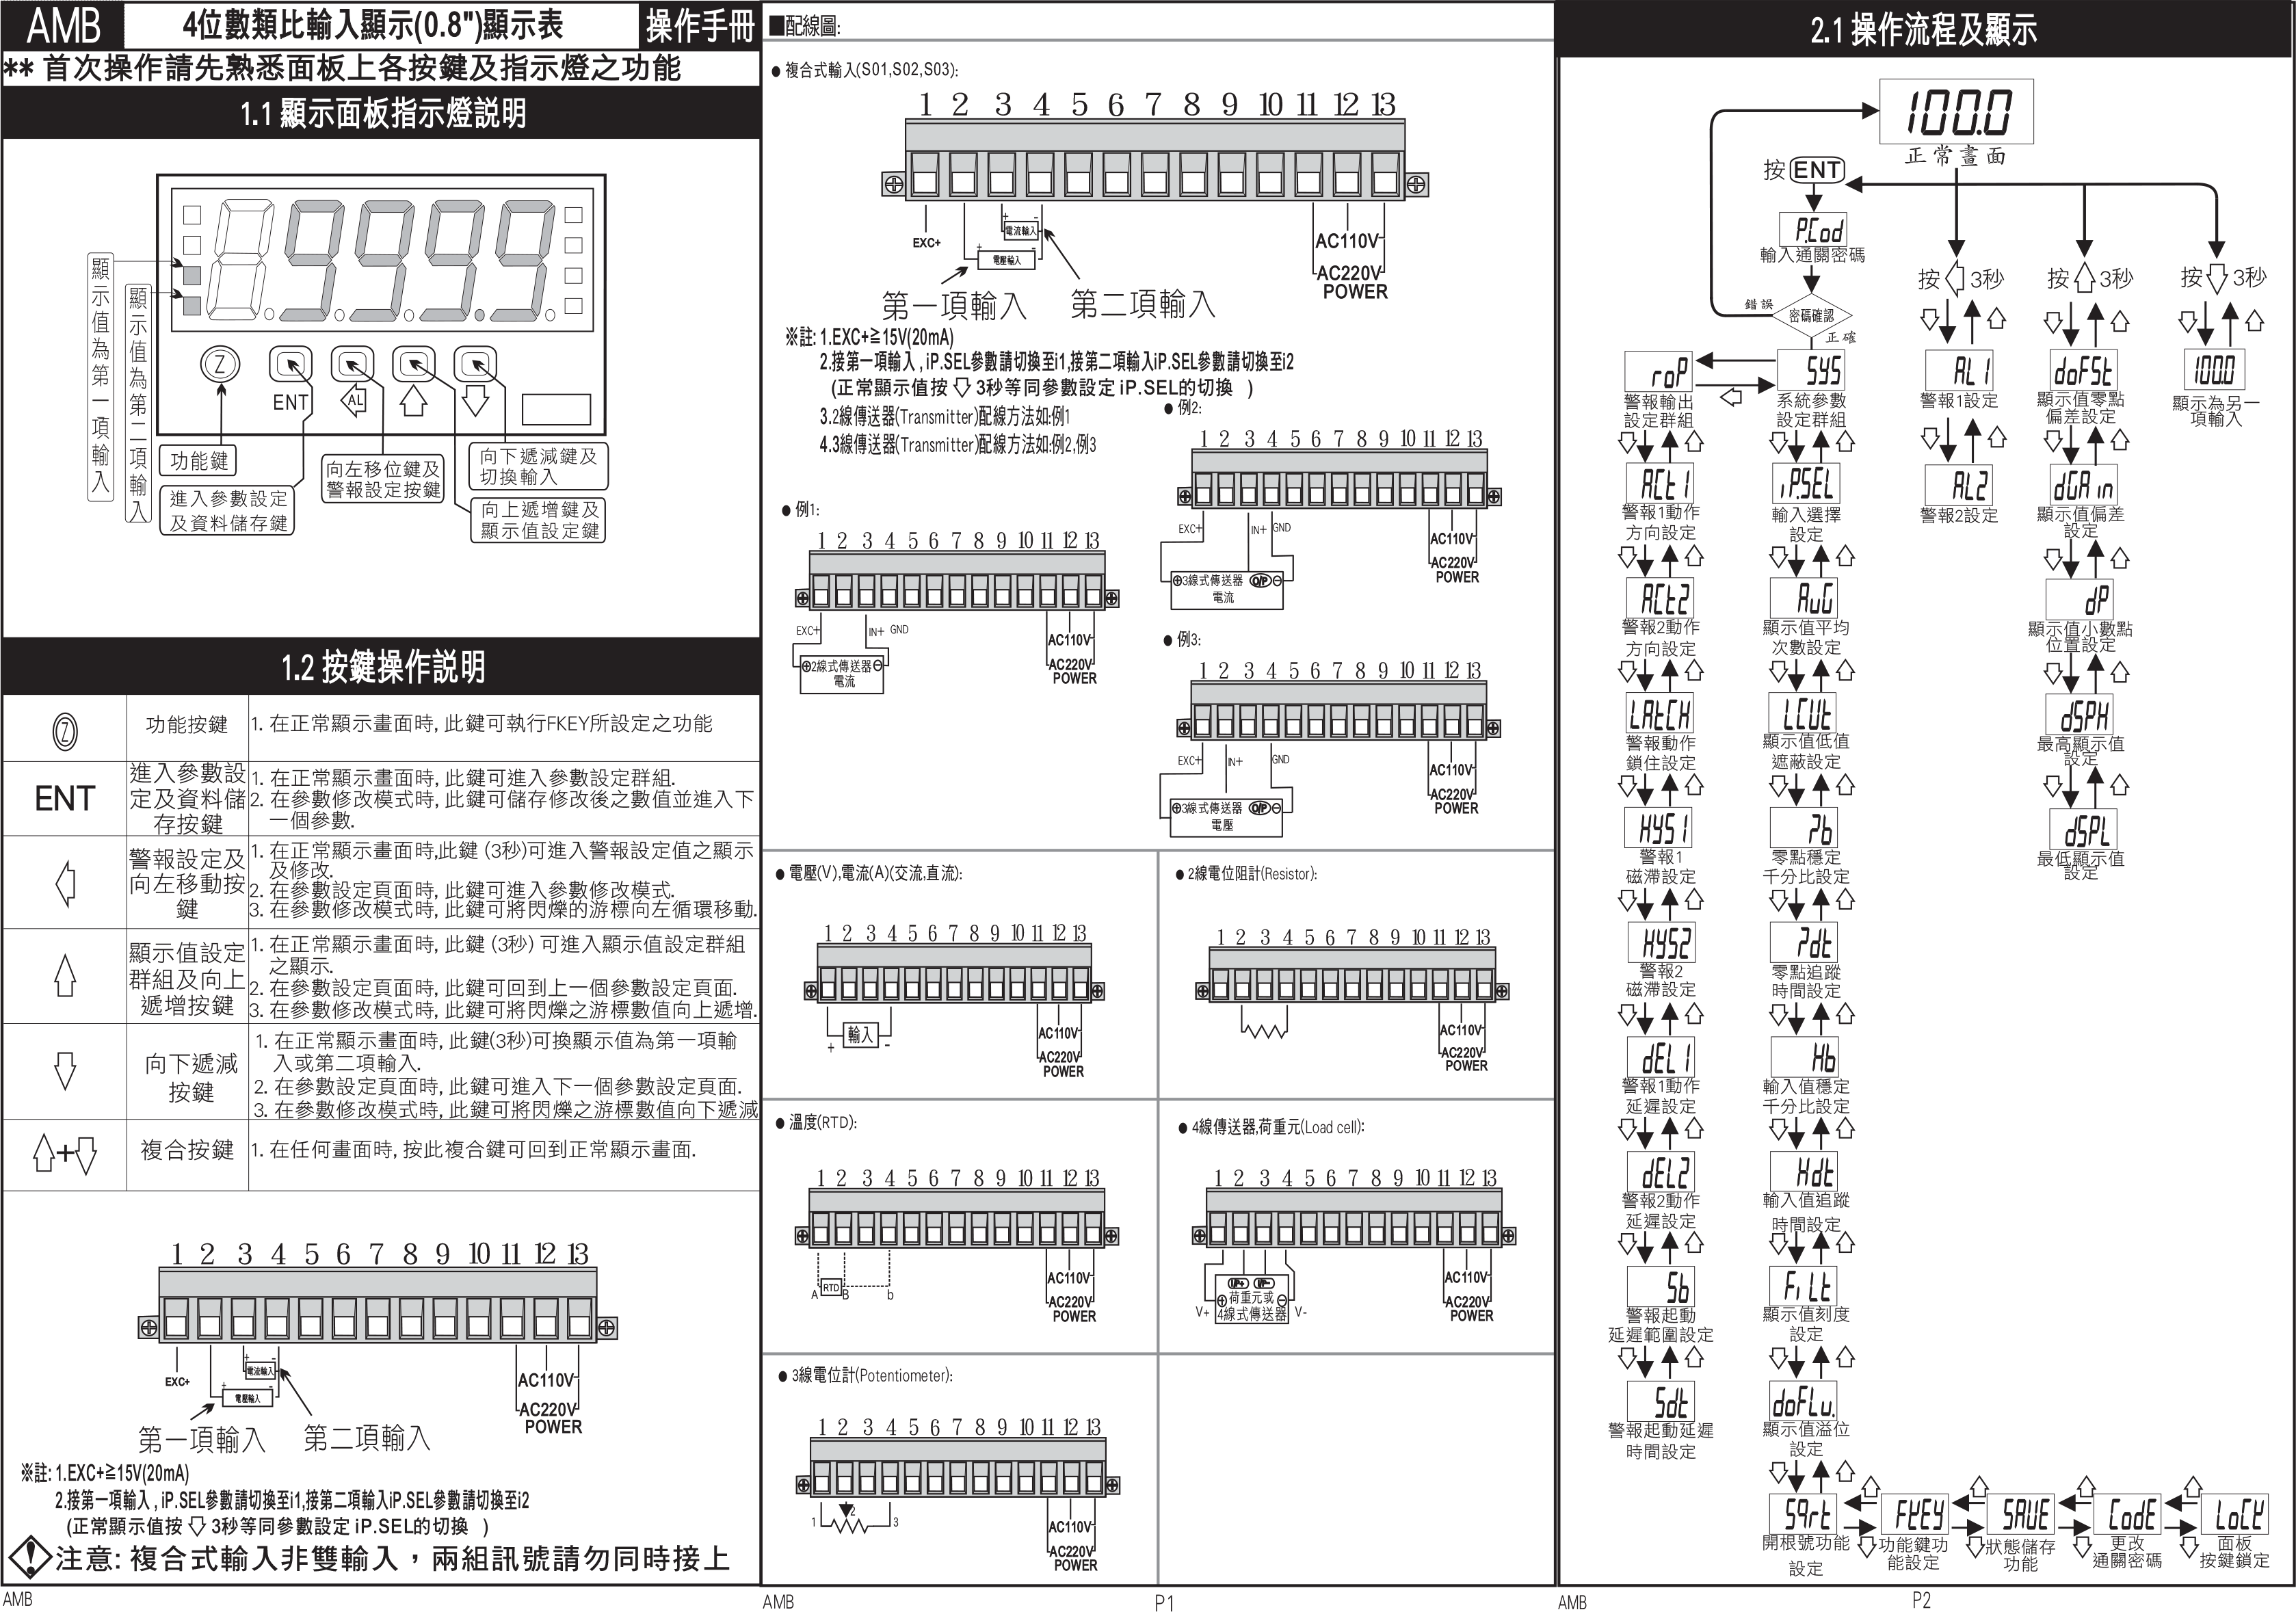 數位式溫度表/數位式溫度顯示器/溫度顯示表說明 - 昌揚科技有限公司